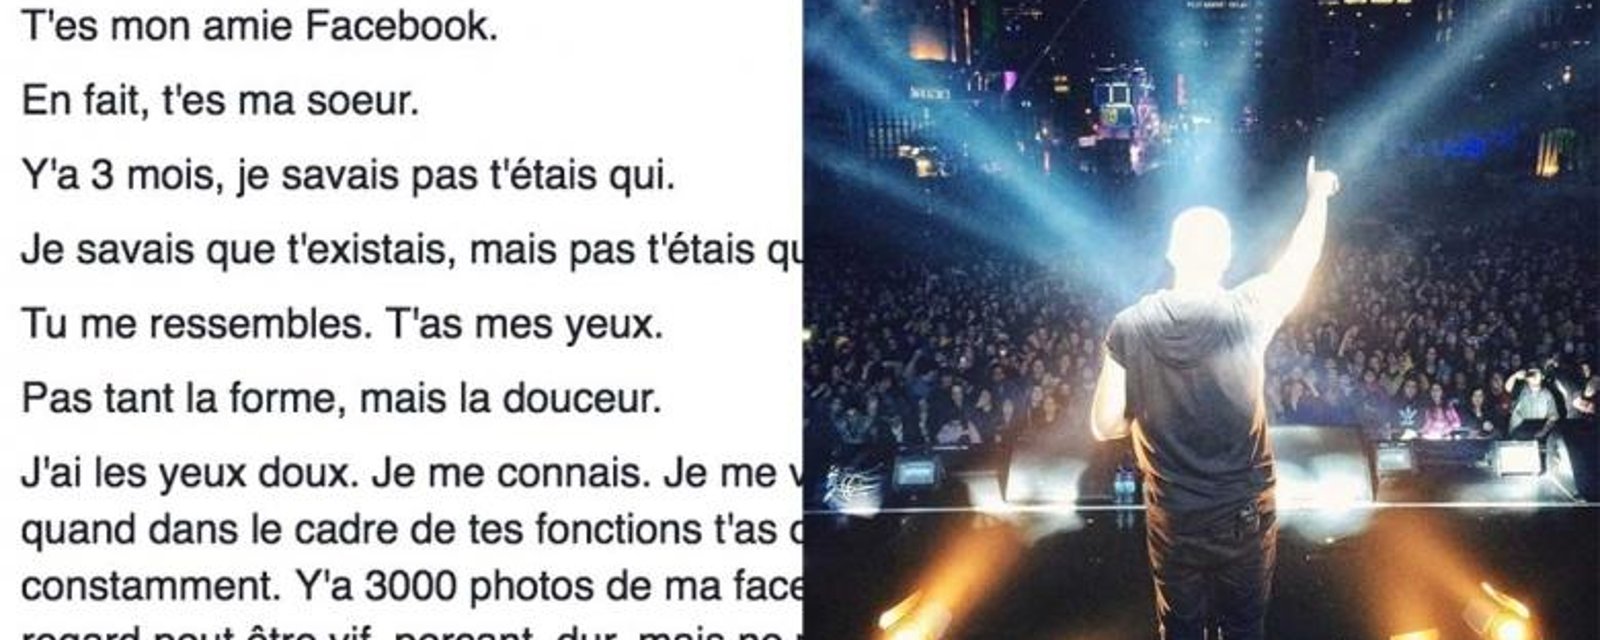 Un populaire chanteur québécois découvre qu'il a une soeur sur Facebook!